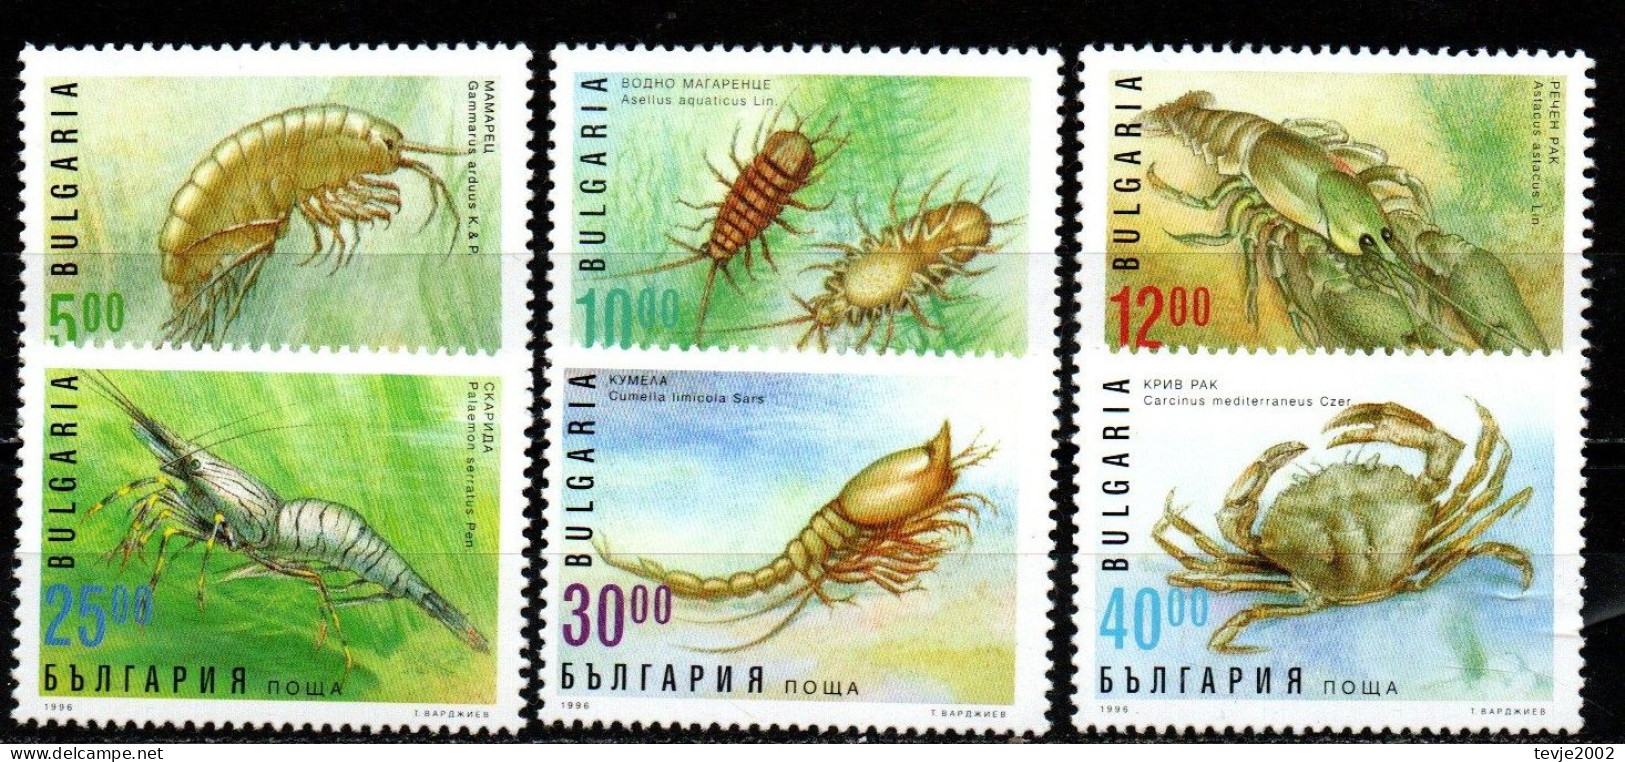 Bulgarien 1996 - Mi.Nr. 4238 - 4243 - Postfrisch MNH - Tiere Animals Krabben Crabs - Crustaceans